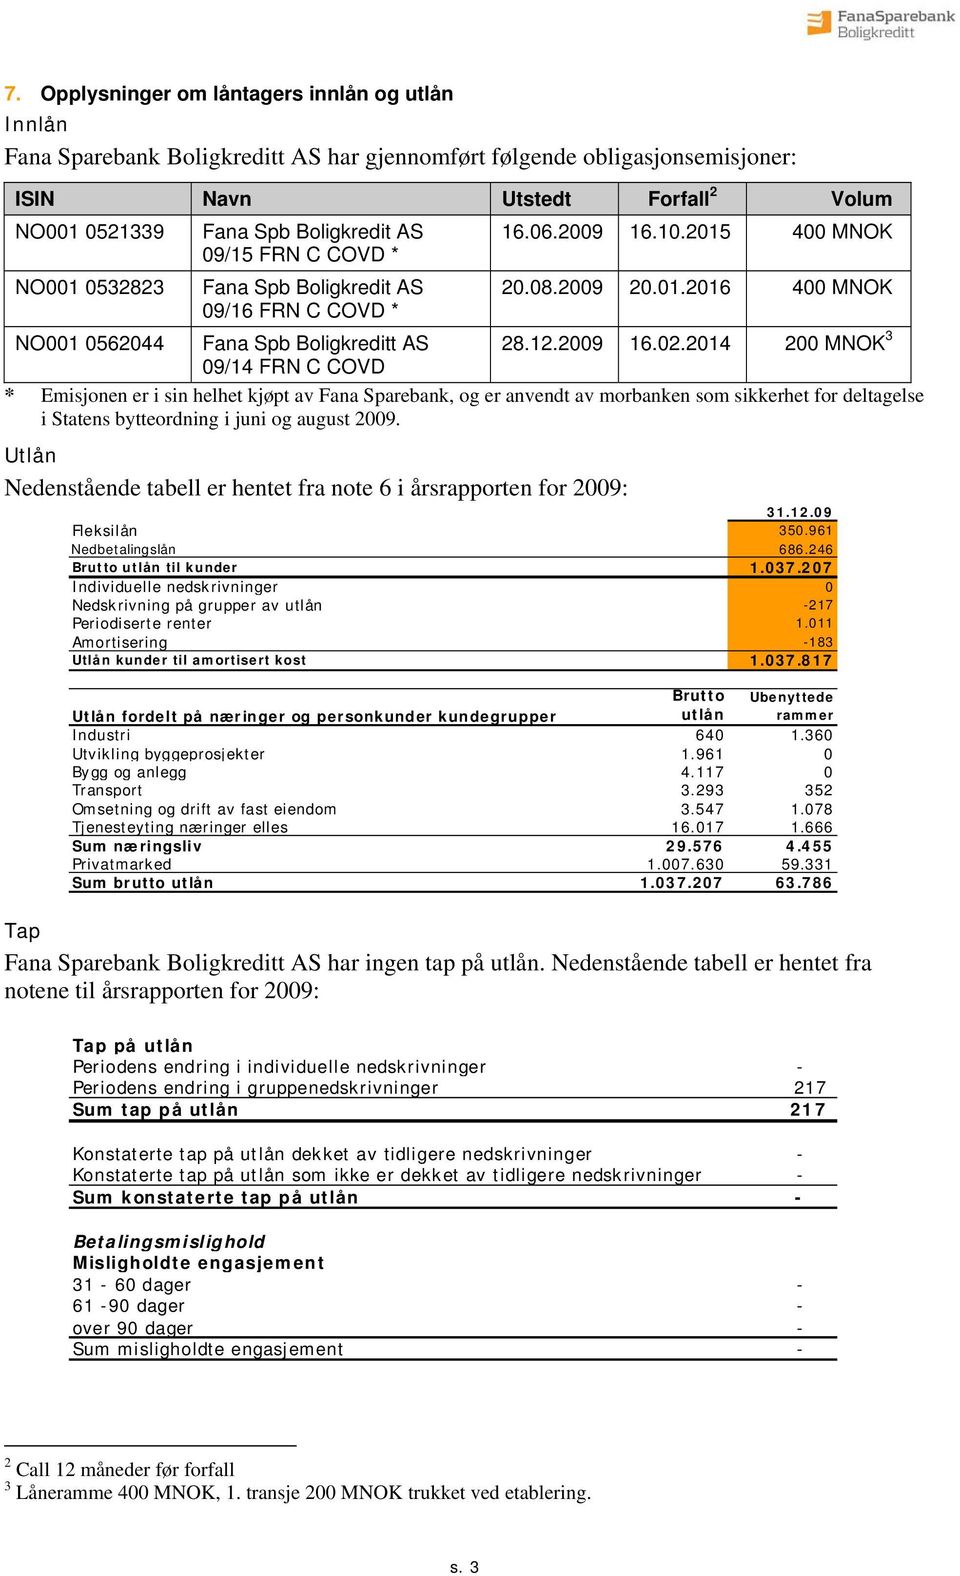 2014 200 MNOK 3 09/14 FRN C COVD * Emisjonen er i sin helhet kjøpt av Fana Sparebank, og er anvendt av morbanken som sikkerhet for deltagelse i Statens bytteordning i juni og august 2009.